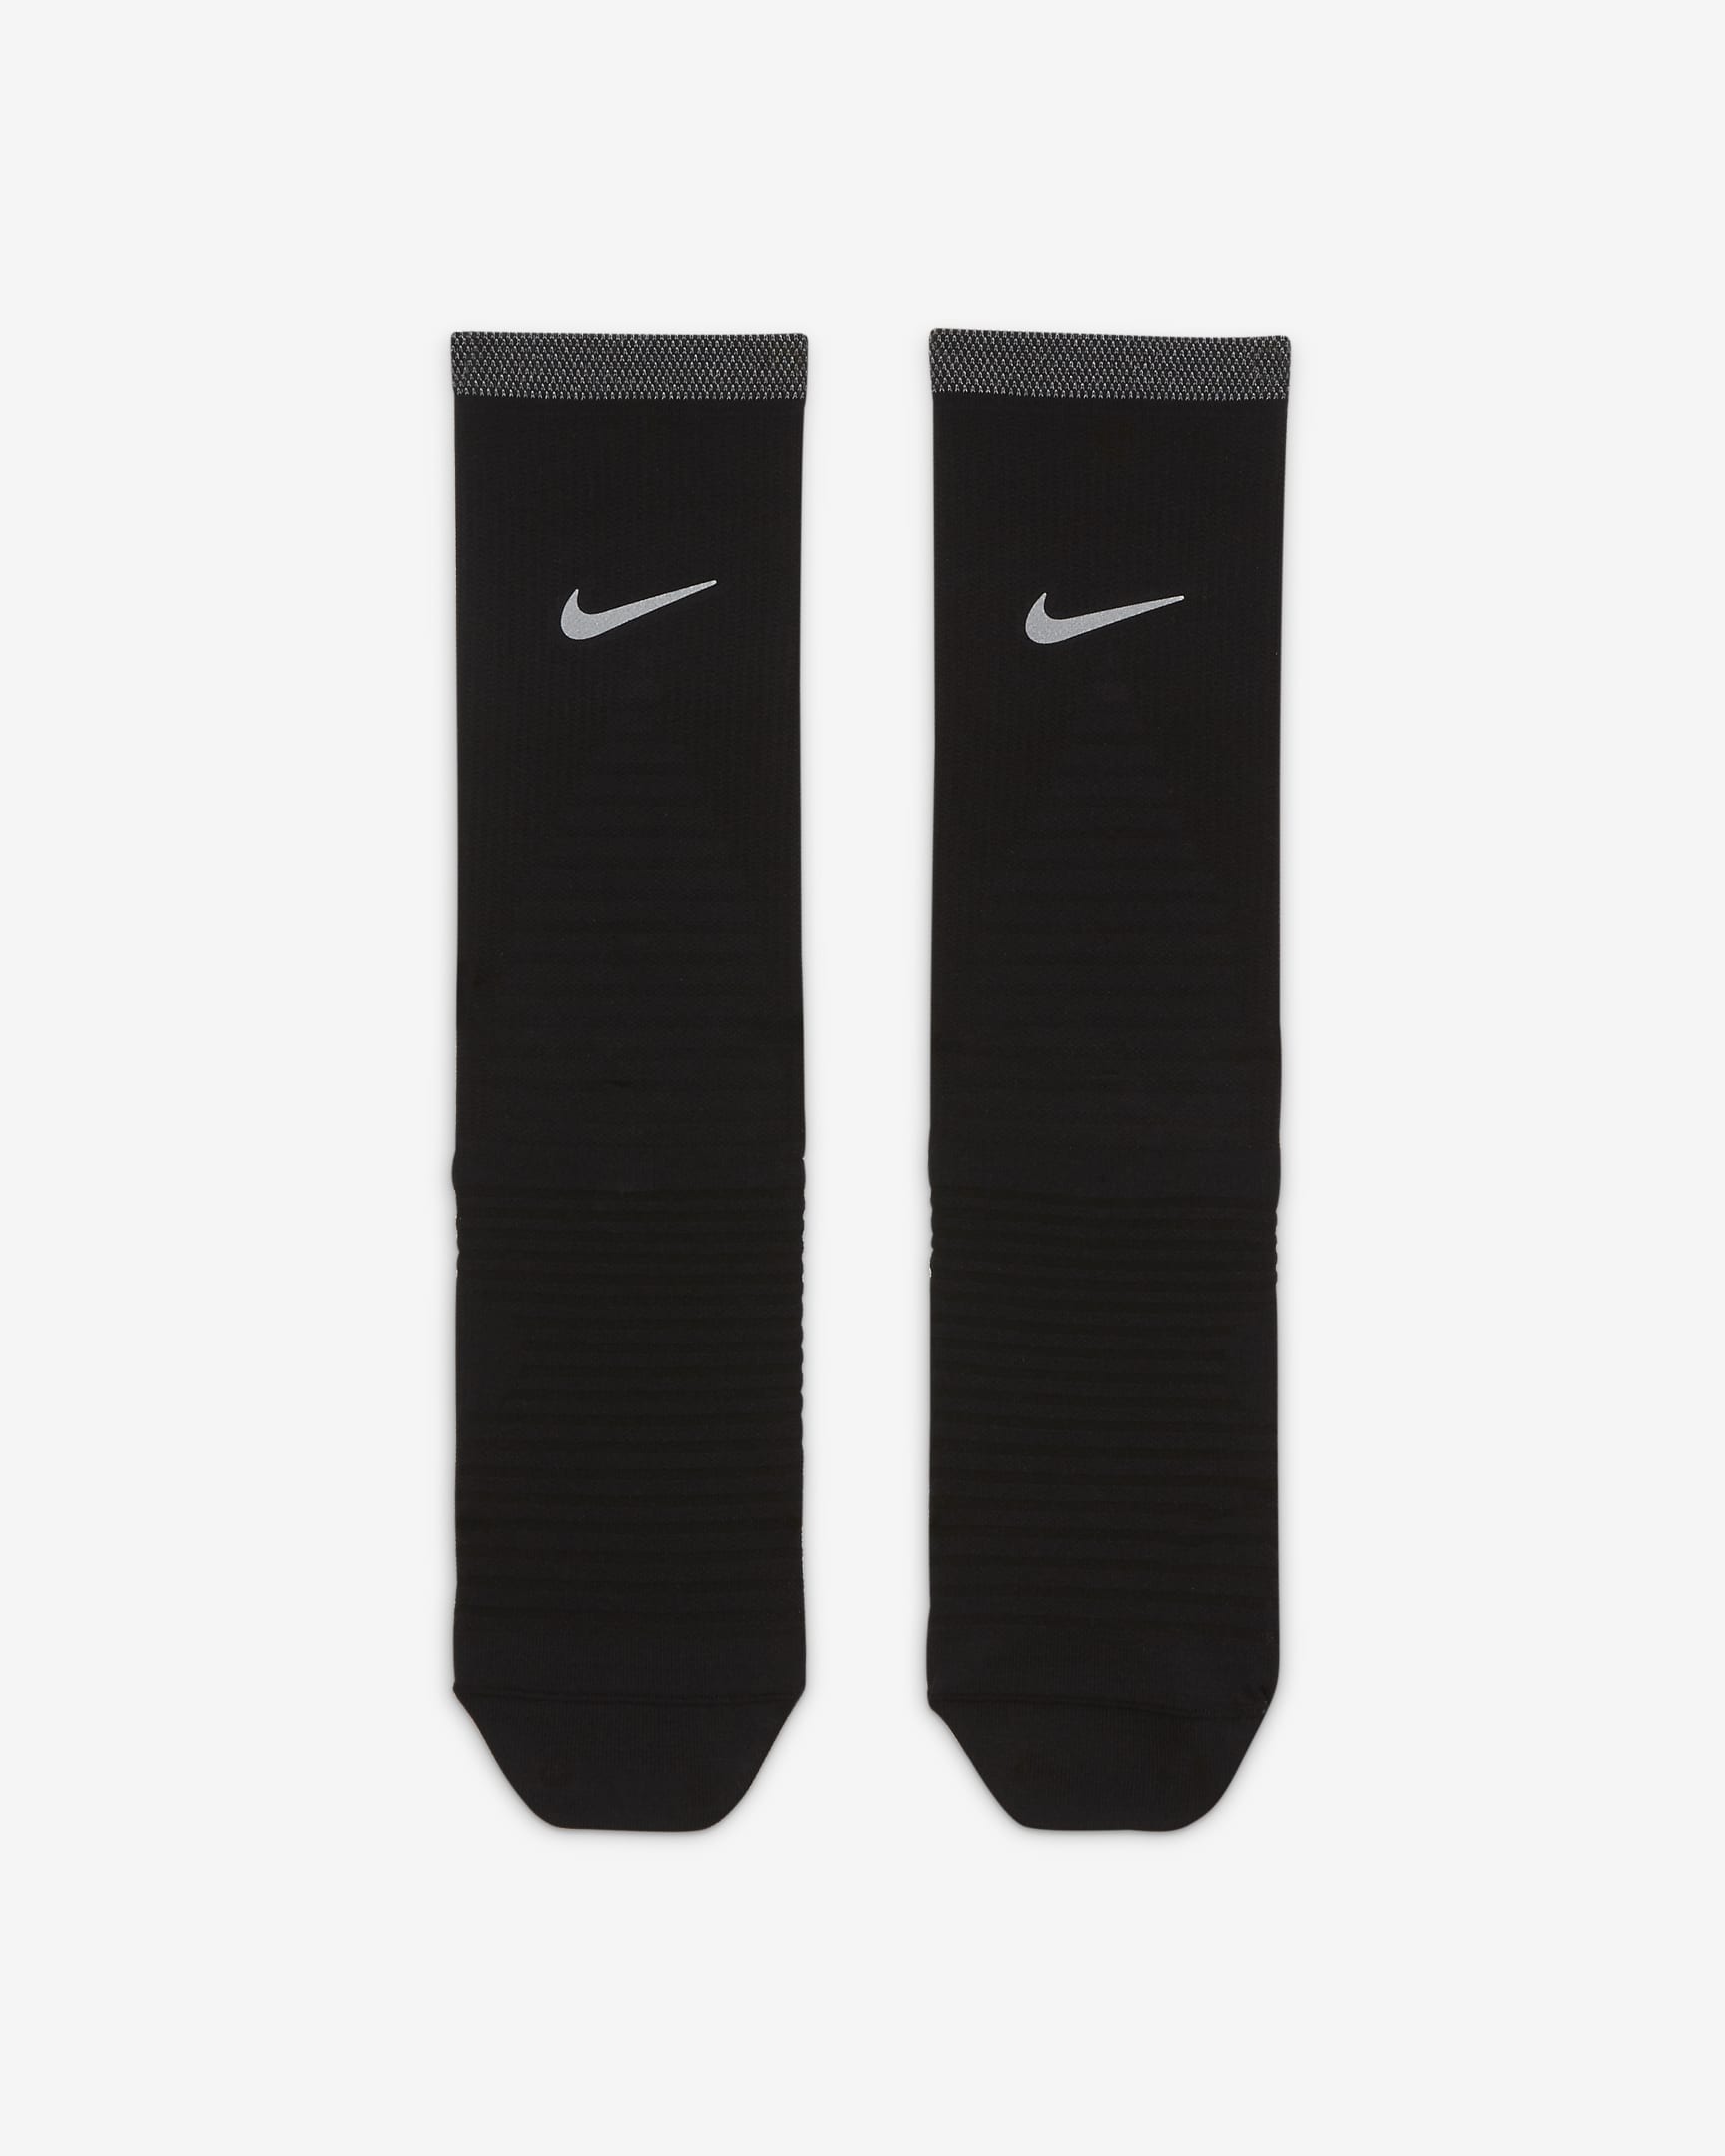 Chaussettes de running mi-mollet Nike Spark Lightweight - Noir/Reflect Silver